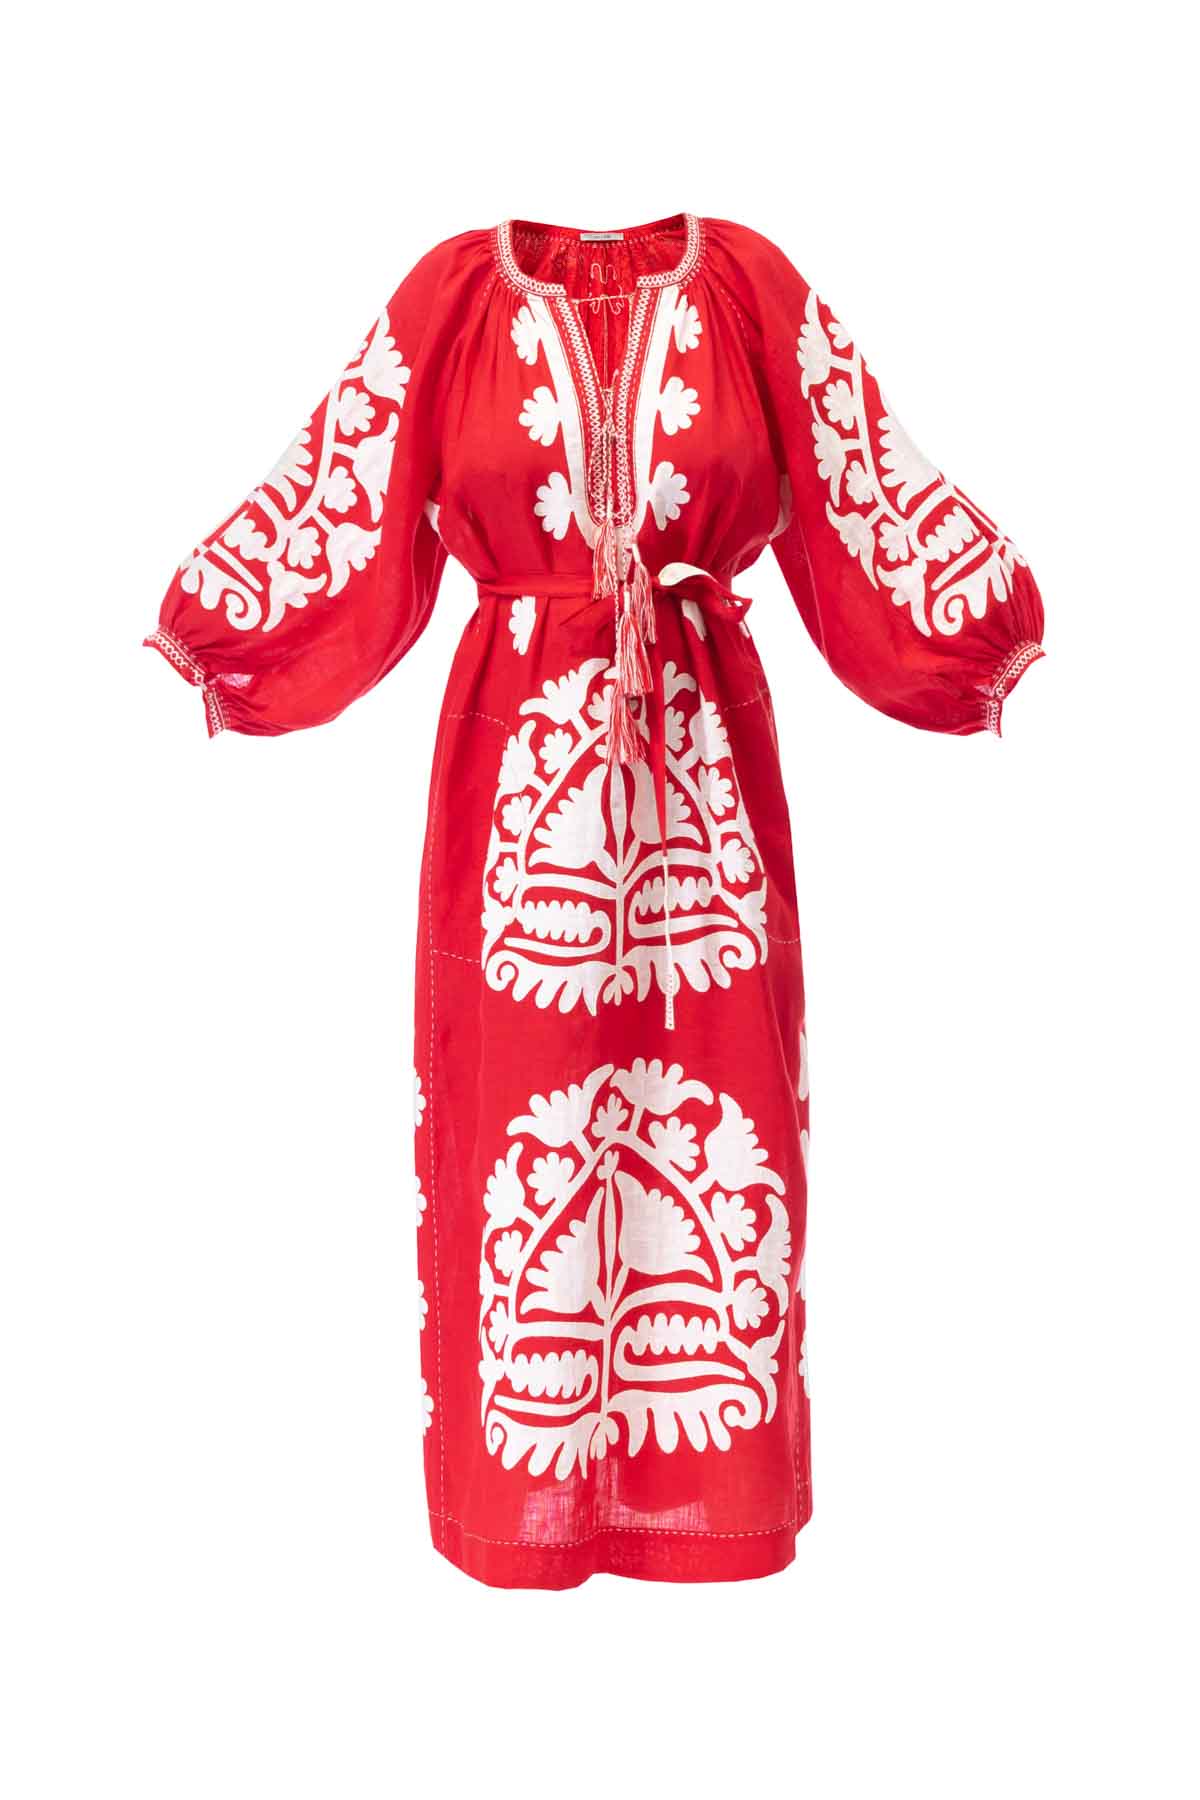 Shalimar Dress - Red & White